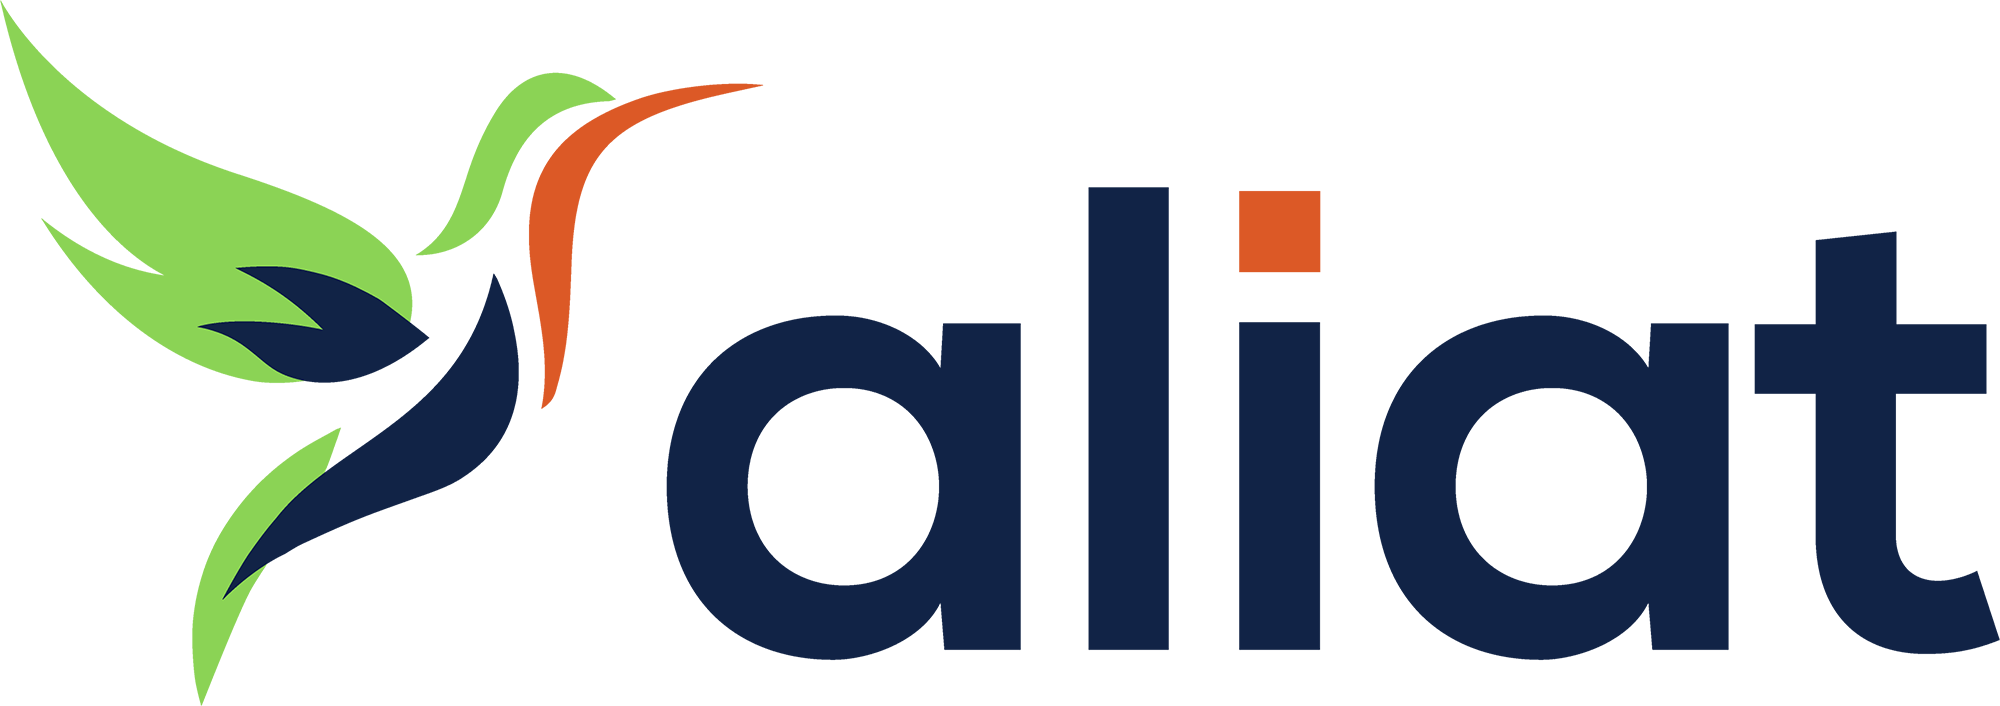 Aliat Logo